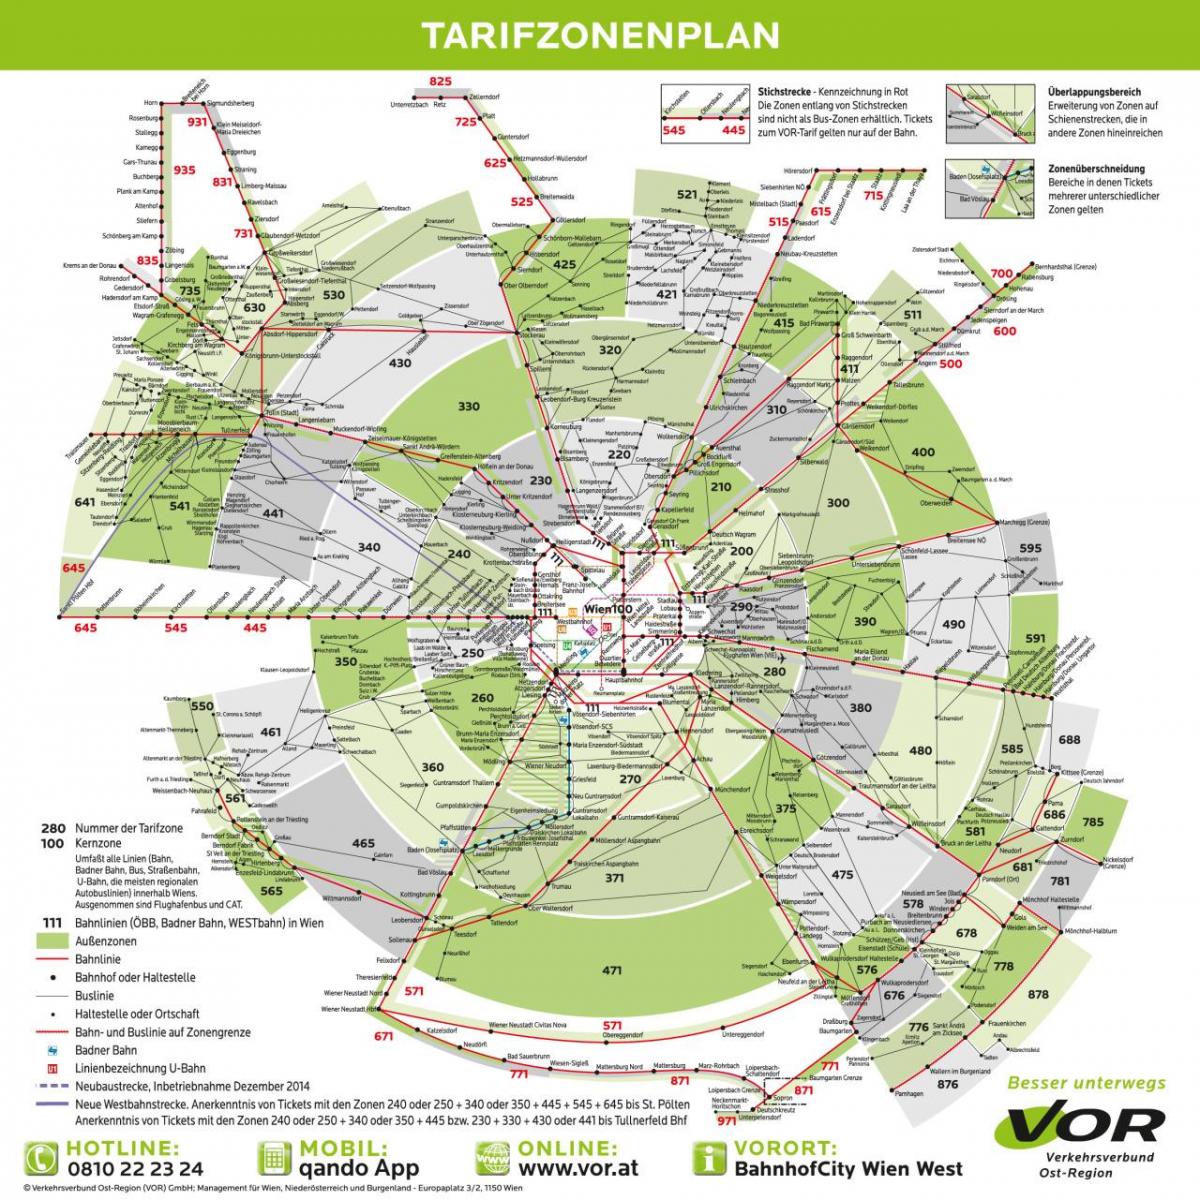 Karte von Wien-transport-Zonen